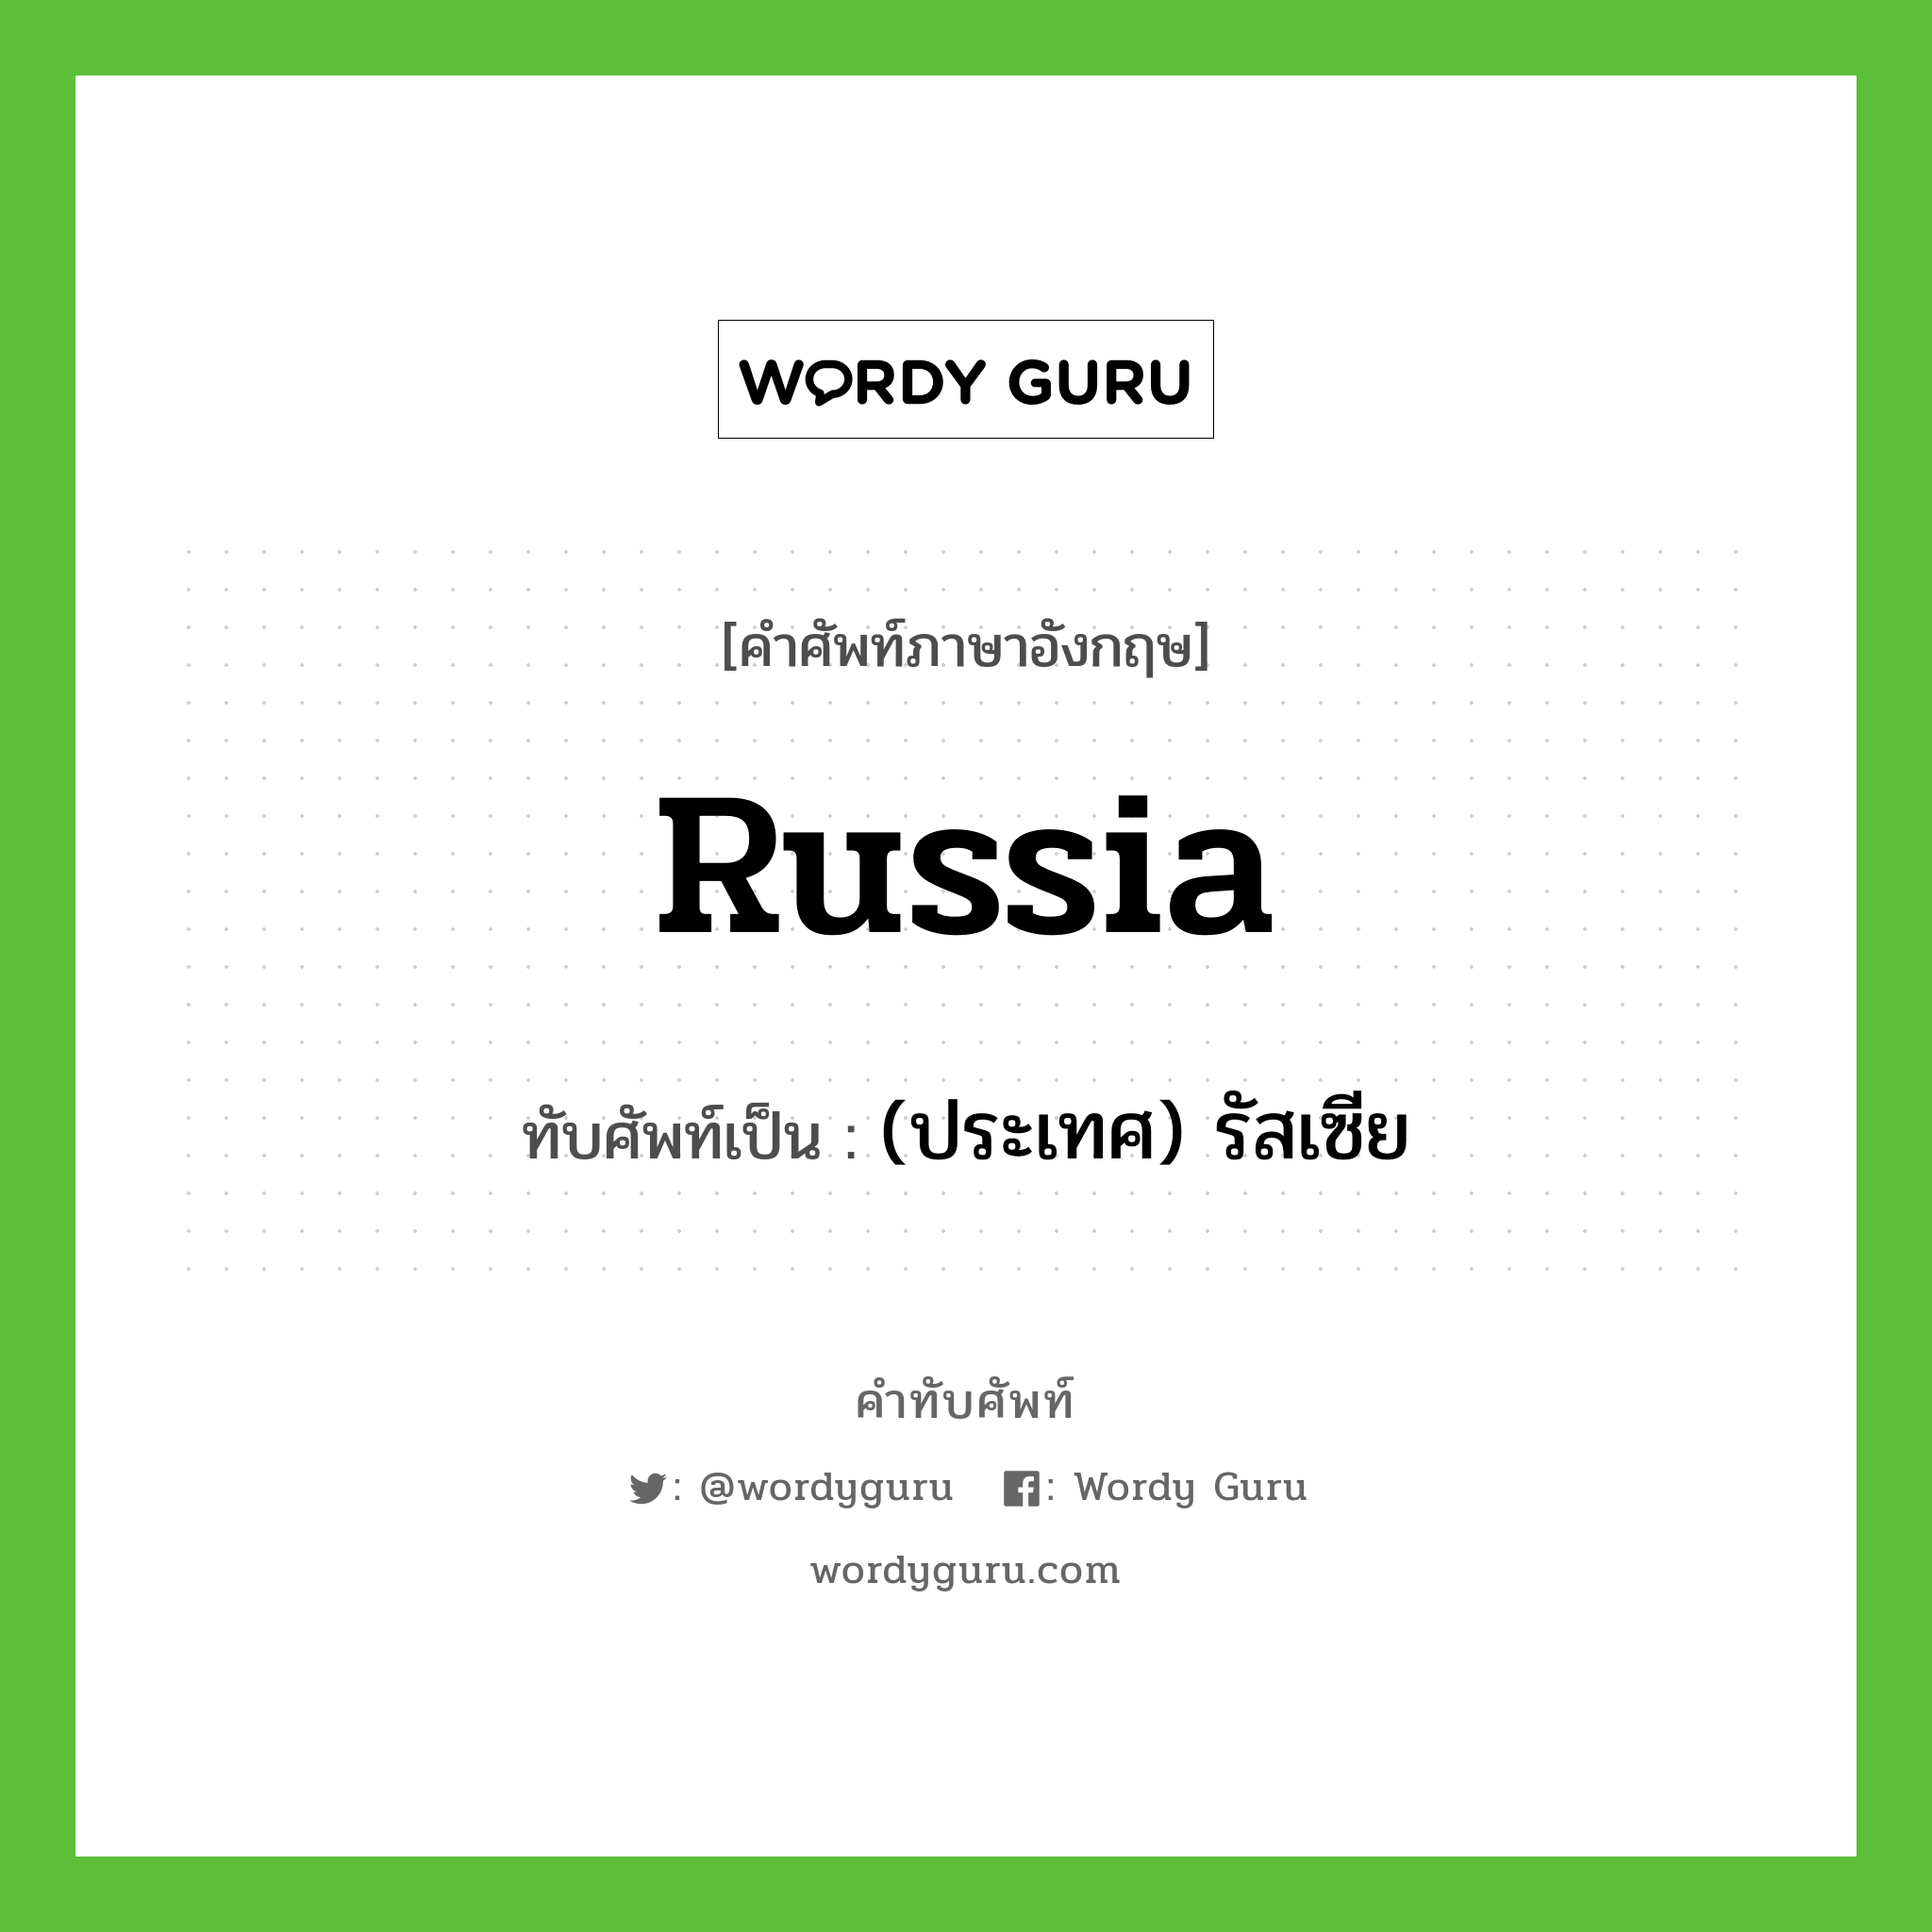 Russia เขียนเป็นคำไทยว่าอะไร?, คำศัพท์ภาษาอังกฤษ Russia ทับศัพท์เป็น (ประเทศ) รัสเซีย